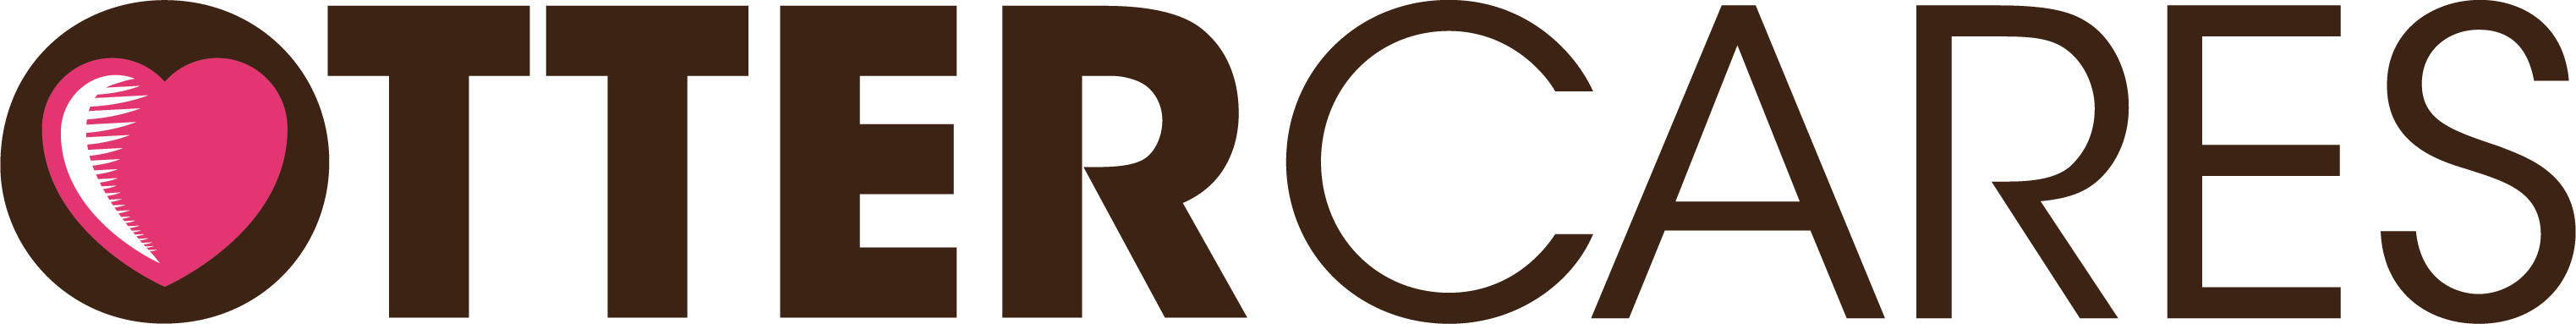 OtterCares logo